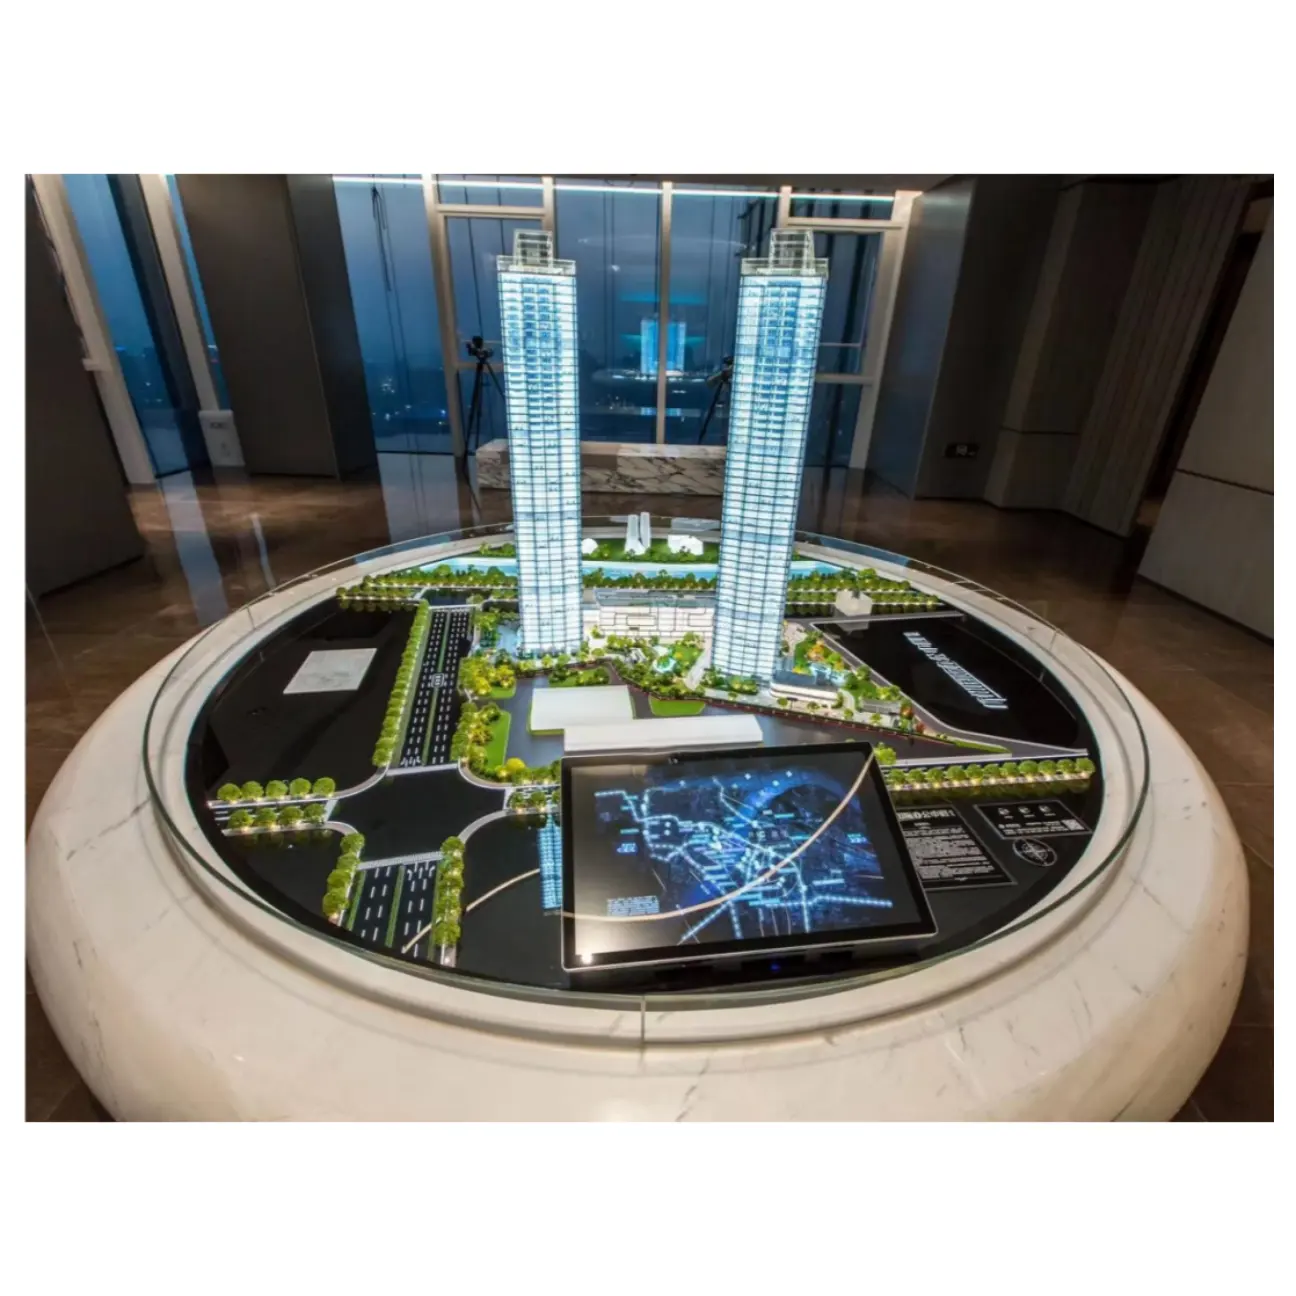 דגמים אדריכליים אינטליגנטיים אלקטרוניים מקצועיים לתערוכה תכנון עיר מיניאטורי